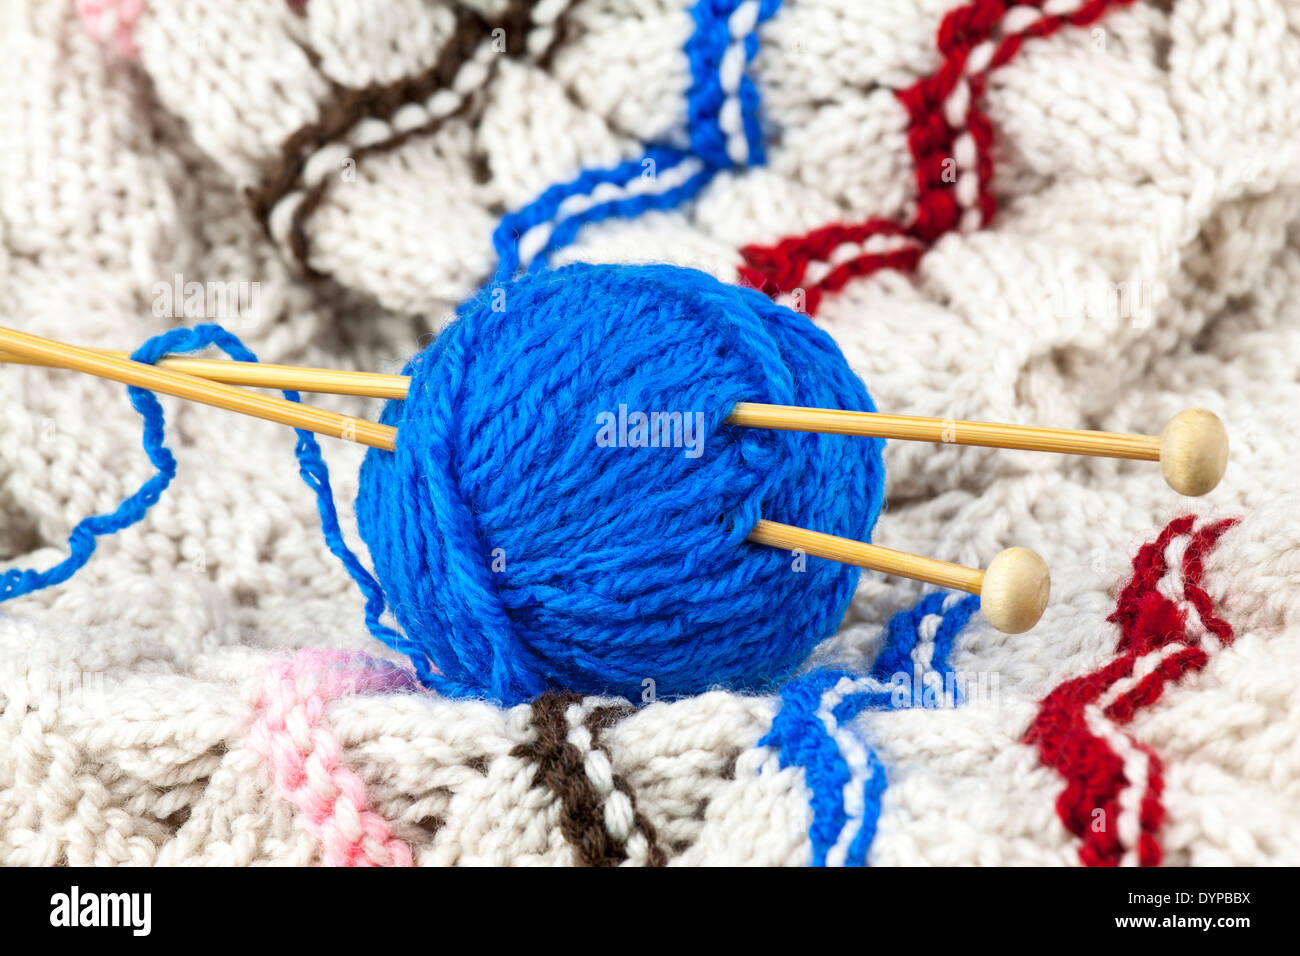 La bola de hilo azul con aguja de tejer Foto de stock